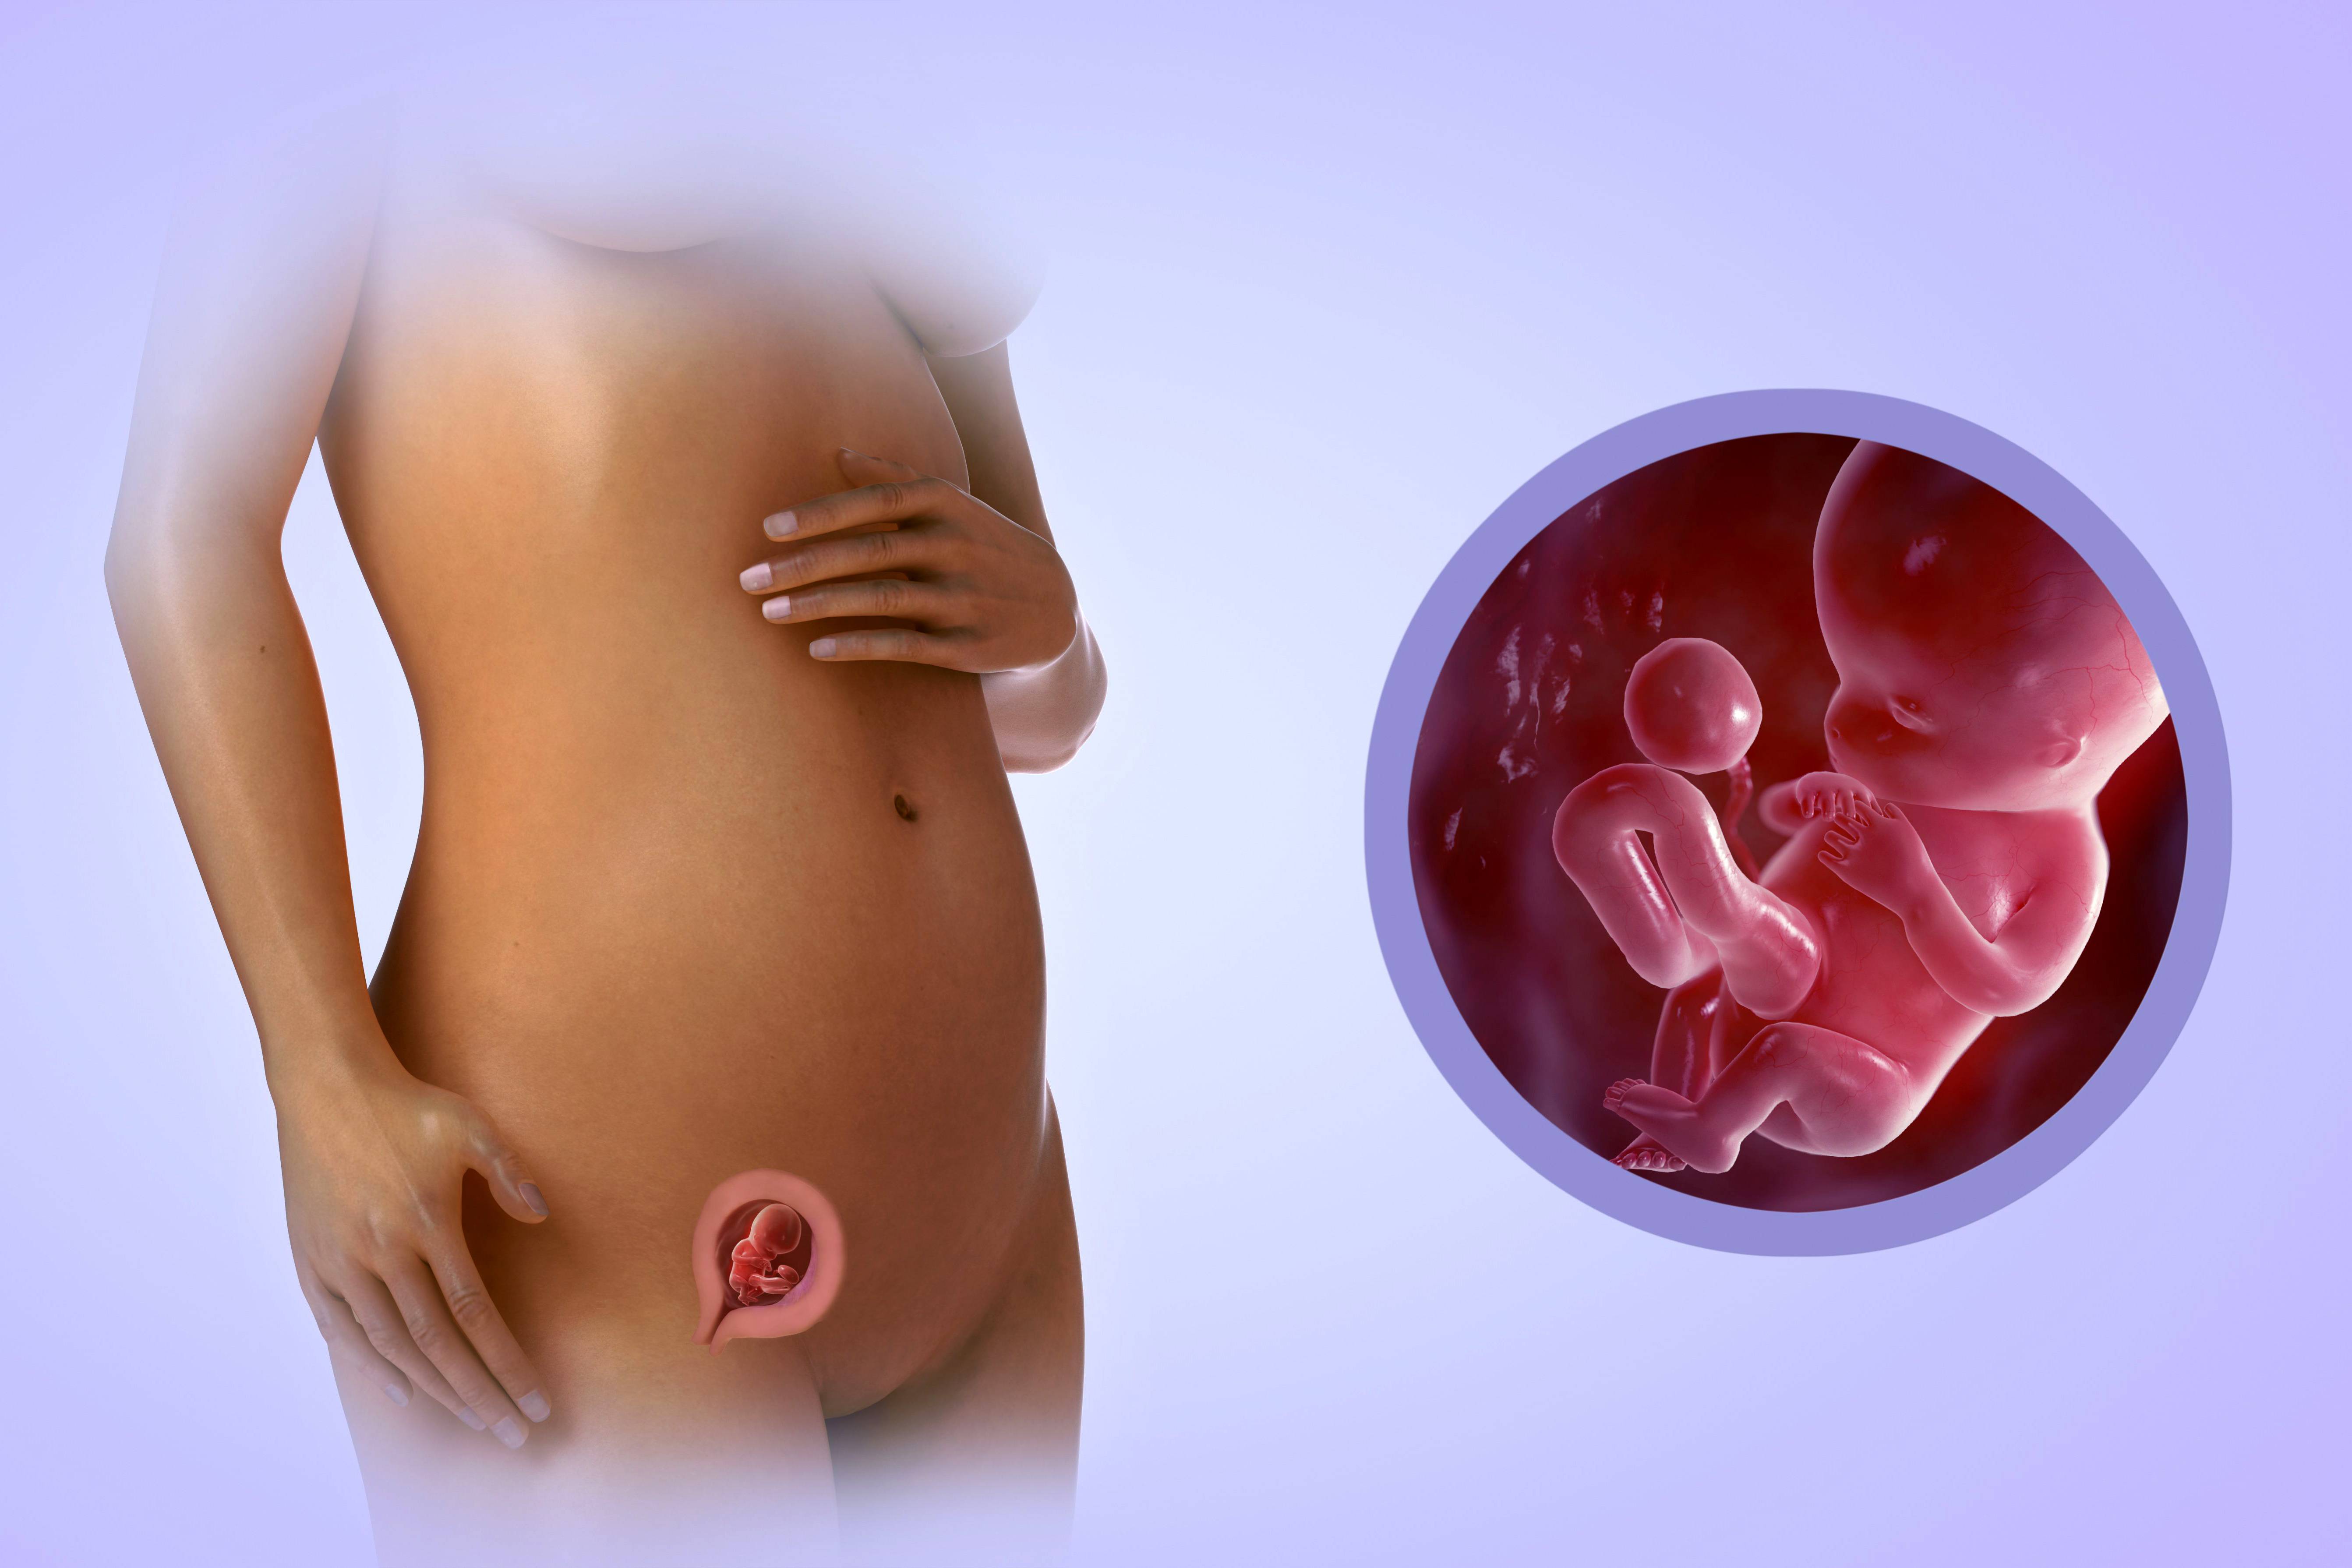 8 12 неделя беременности. Эмбрион на 13 неделе беременности. Эмбрион на 11 неделе беременности. Шевеление ребенка в животе на 16 неделе беременности. Эмбрион на 14 неделе беременности.